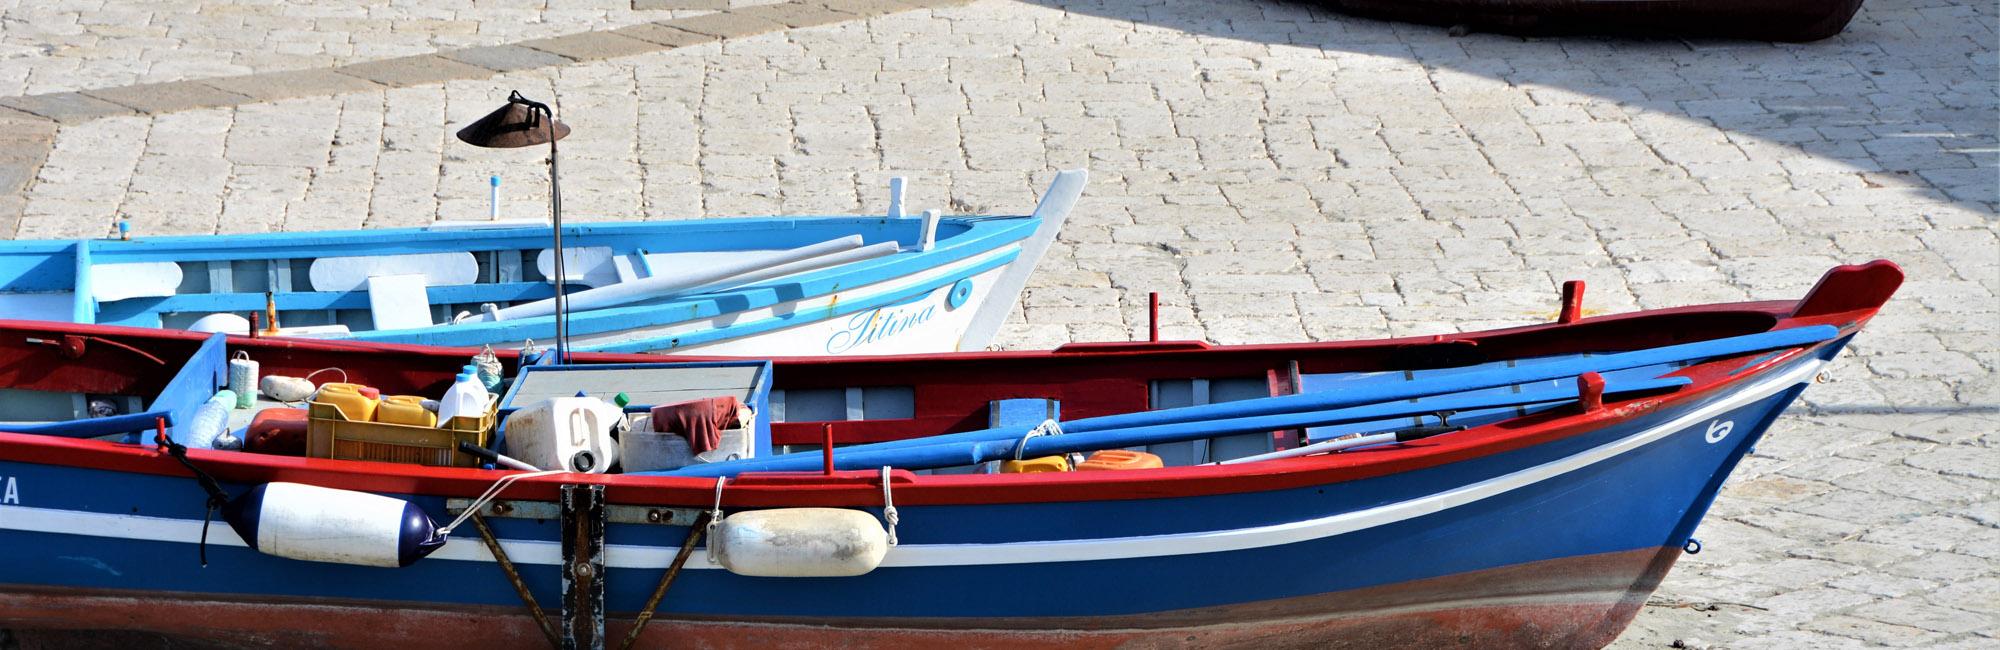 Otranto boats